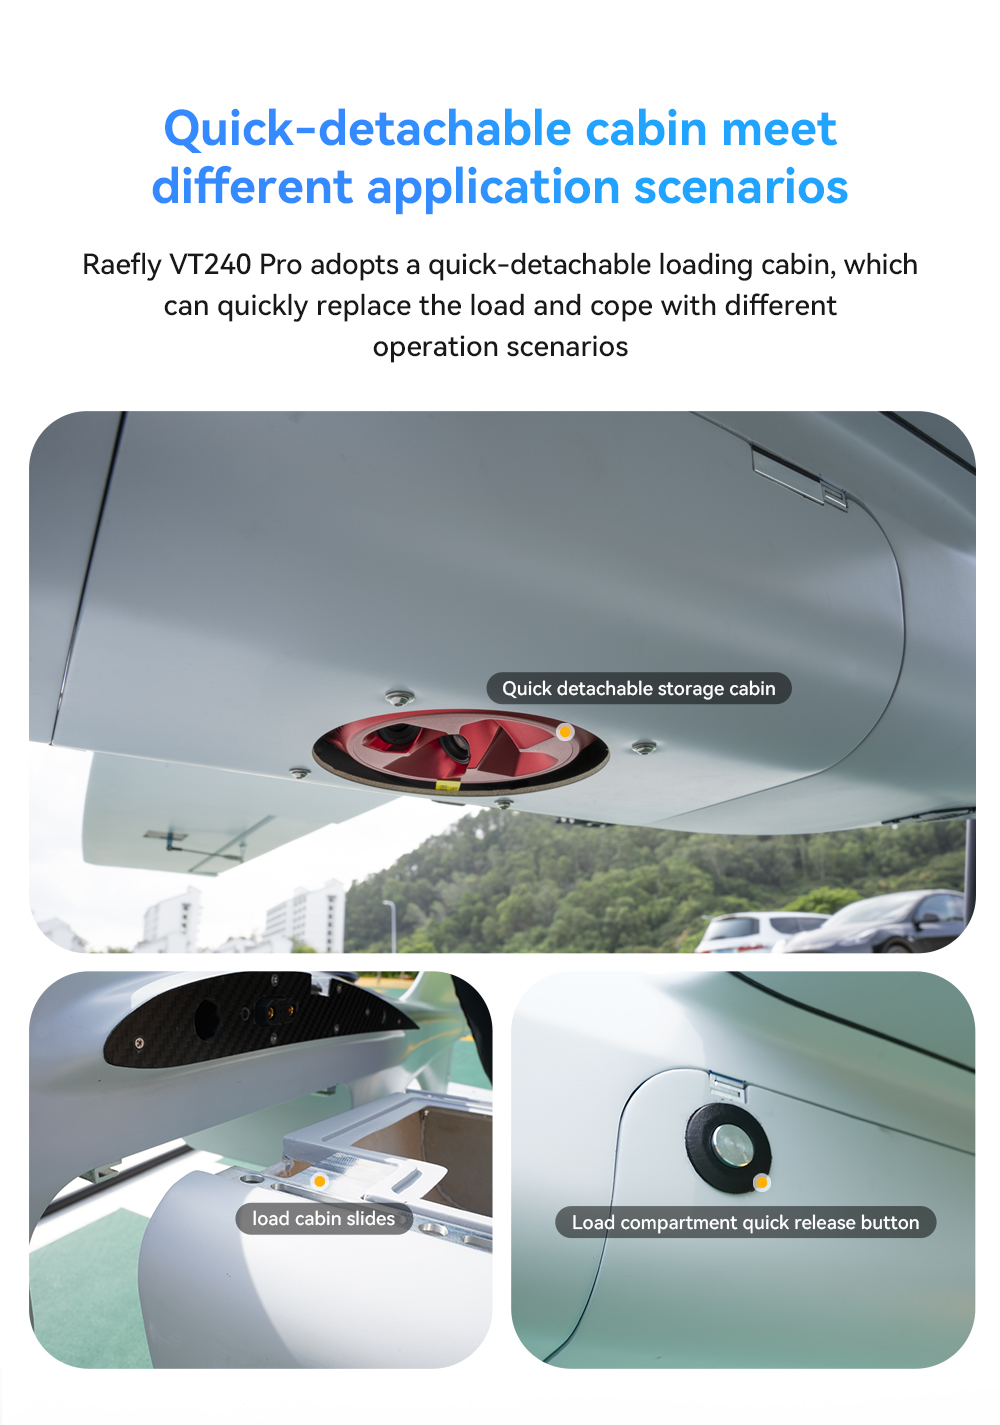 CUAV Raefly VT240 pro VTOL, Raefly VT240 Pro adopts a quick-detachable loading